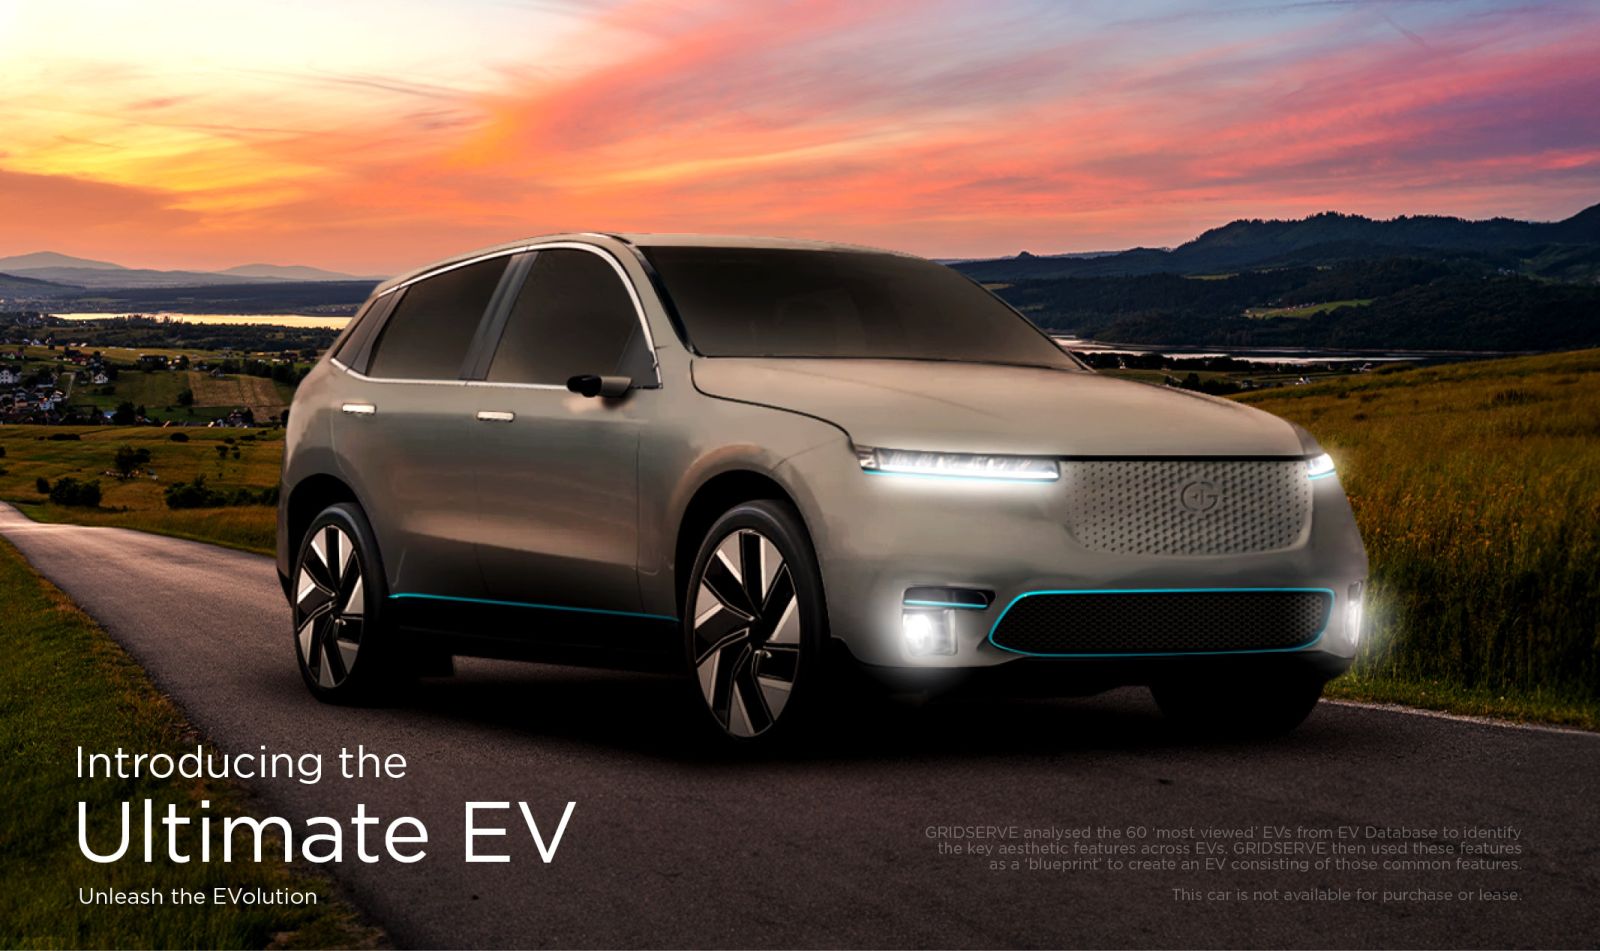 Gridserve The Ultimate EV Ad